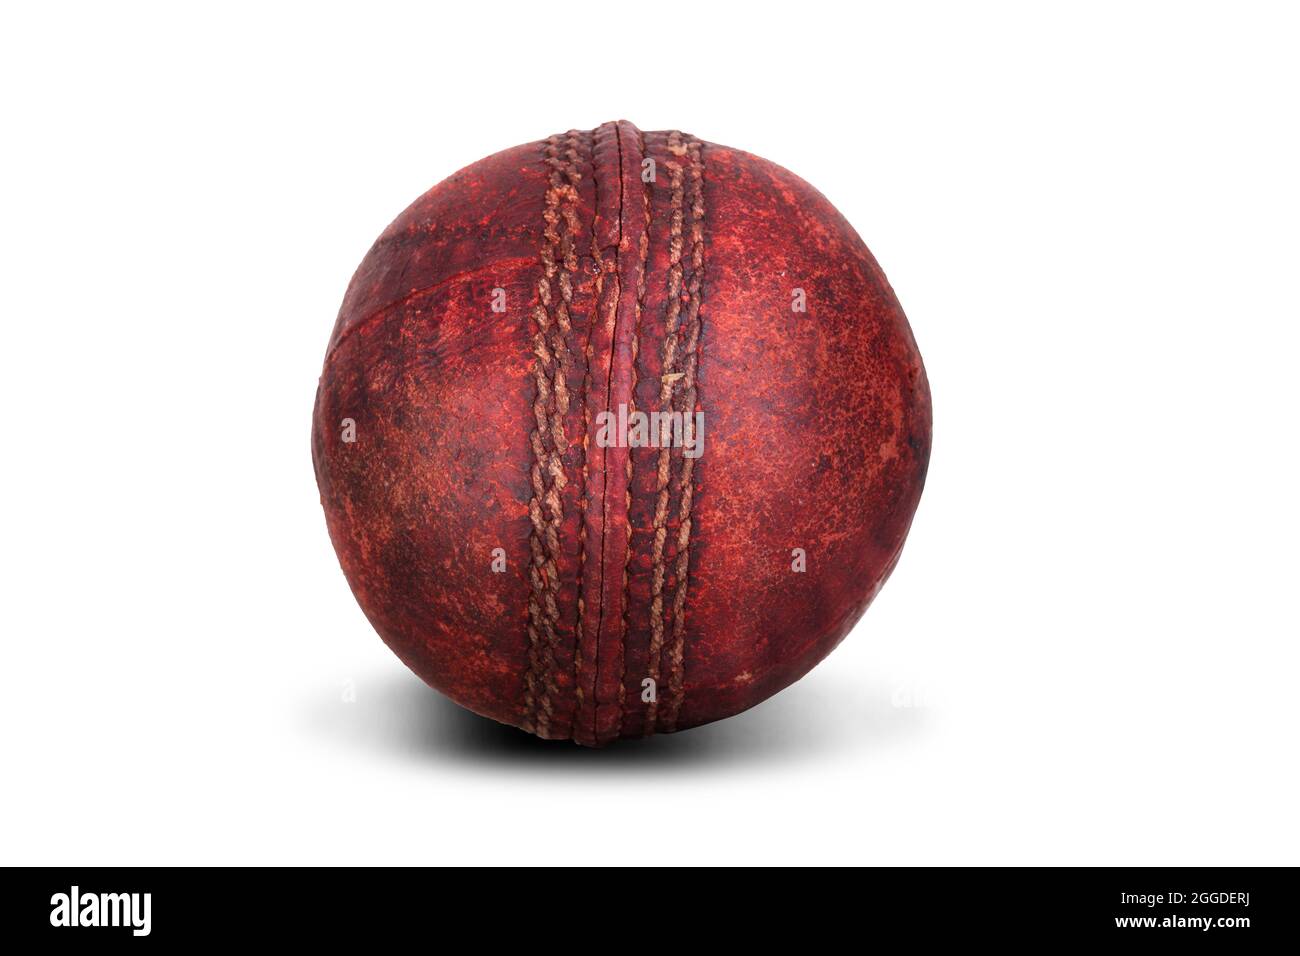 Vieux cuir de balle de cricket rouge avec coutures isolées sur fond blanc. Équipement de sport usé Banque D'Images